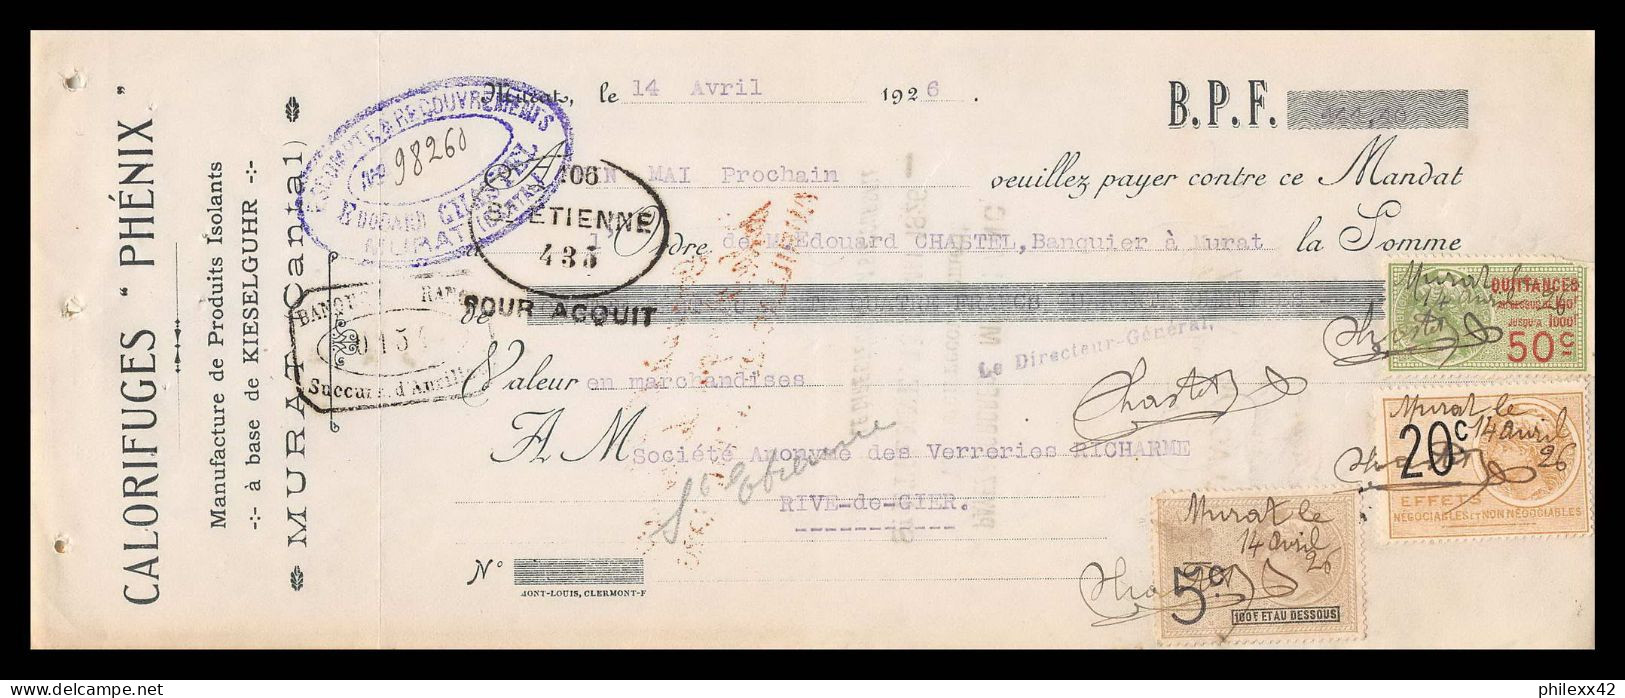 12979 Calorifuges Phénix Murat Cantal Verreries Richarme Rive De Gier Loire 1926 Timbre Fiscal Fiscaux France - Briefe U. Dokumente